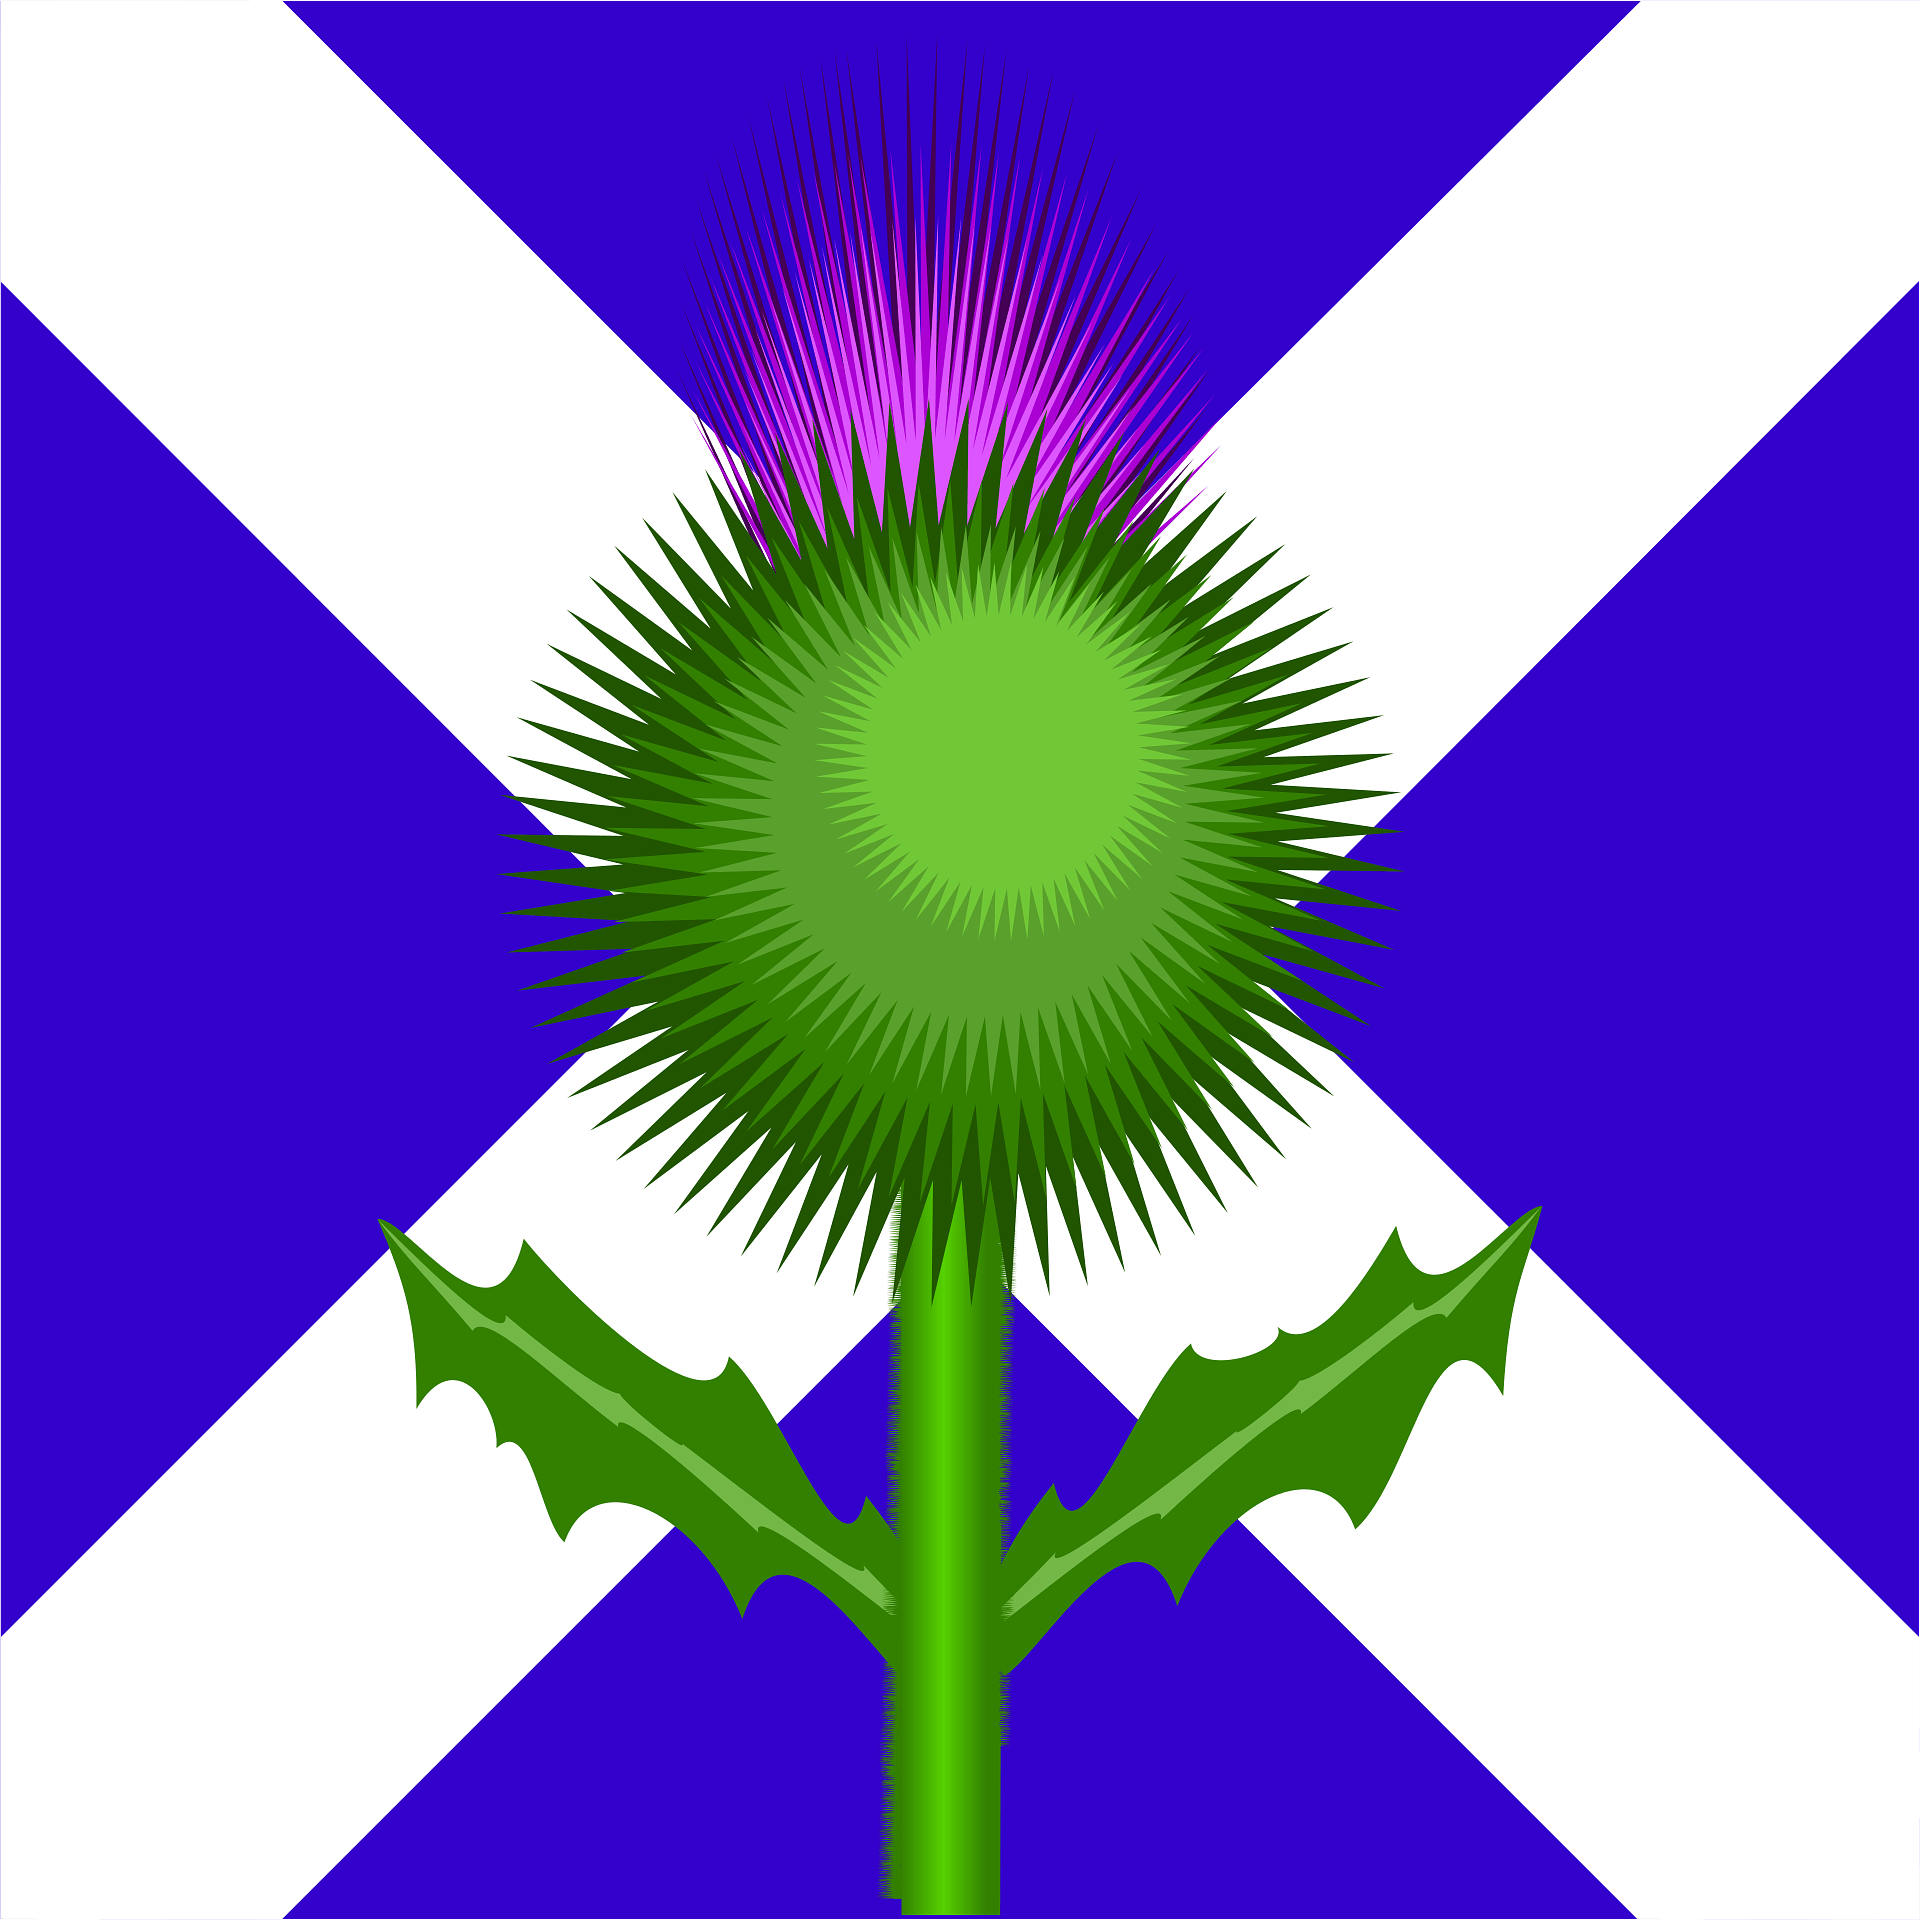 Чертополох символ Шотландии. Цветок чертополоха символ Шотландии. Шотландия флаг с чертополохом. Чертополох растение Шотландии.